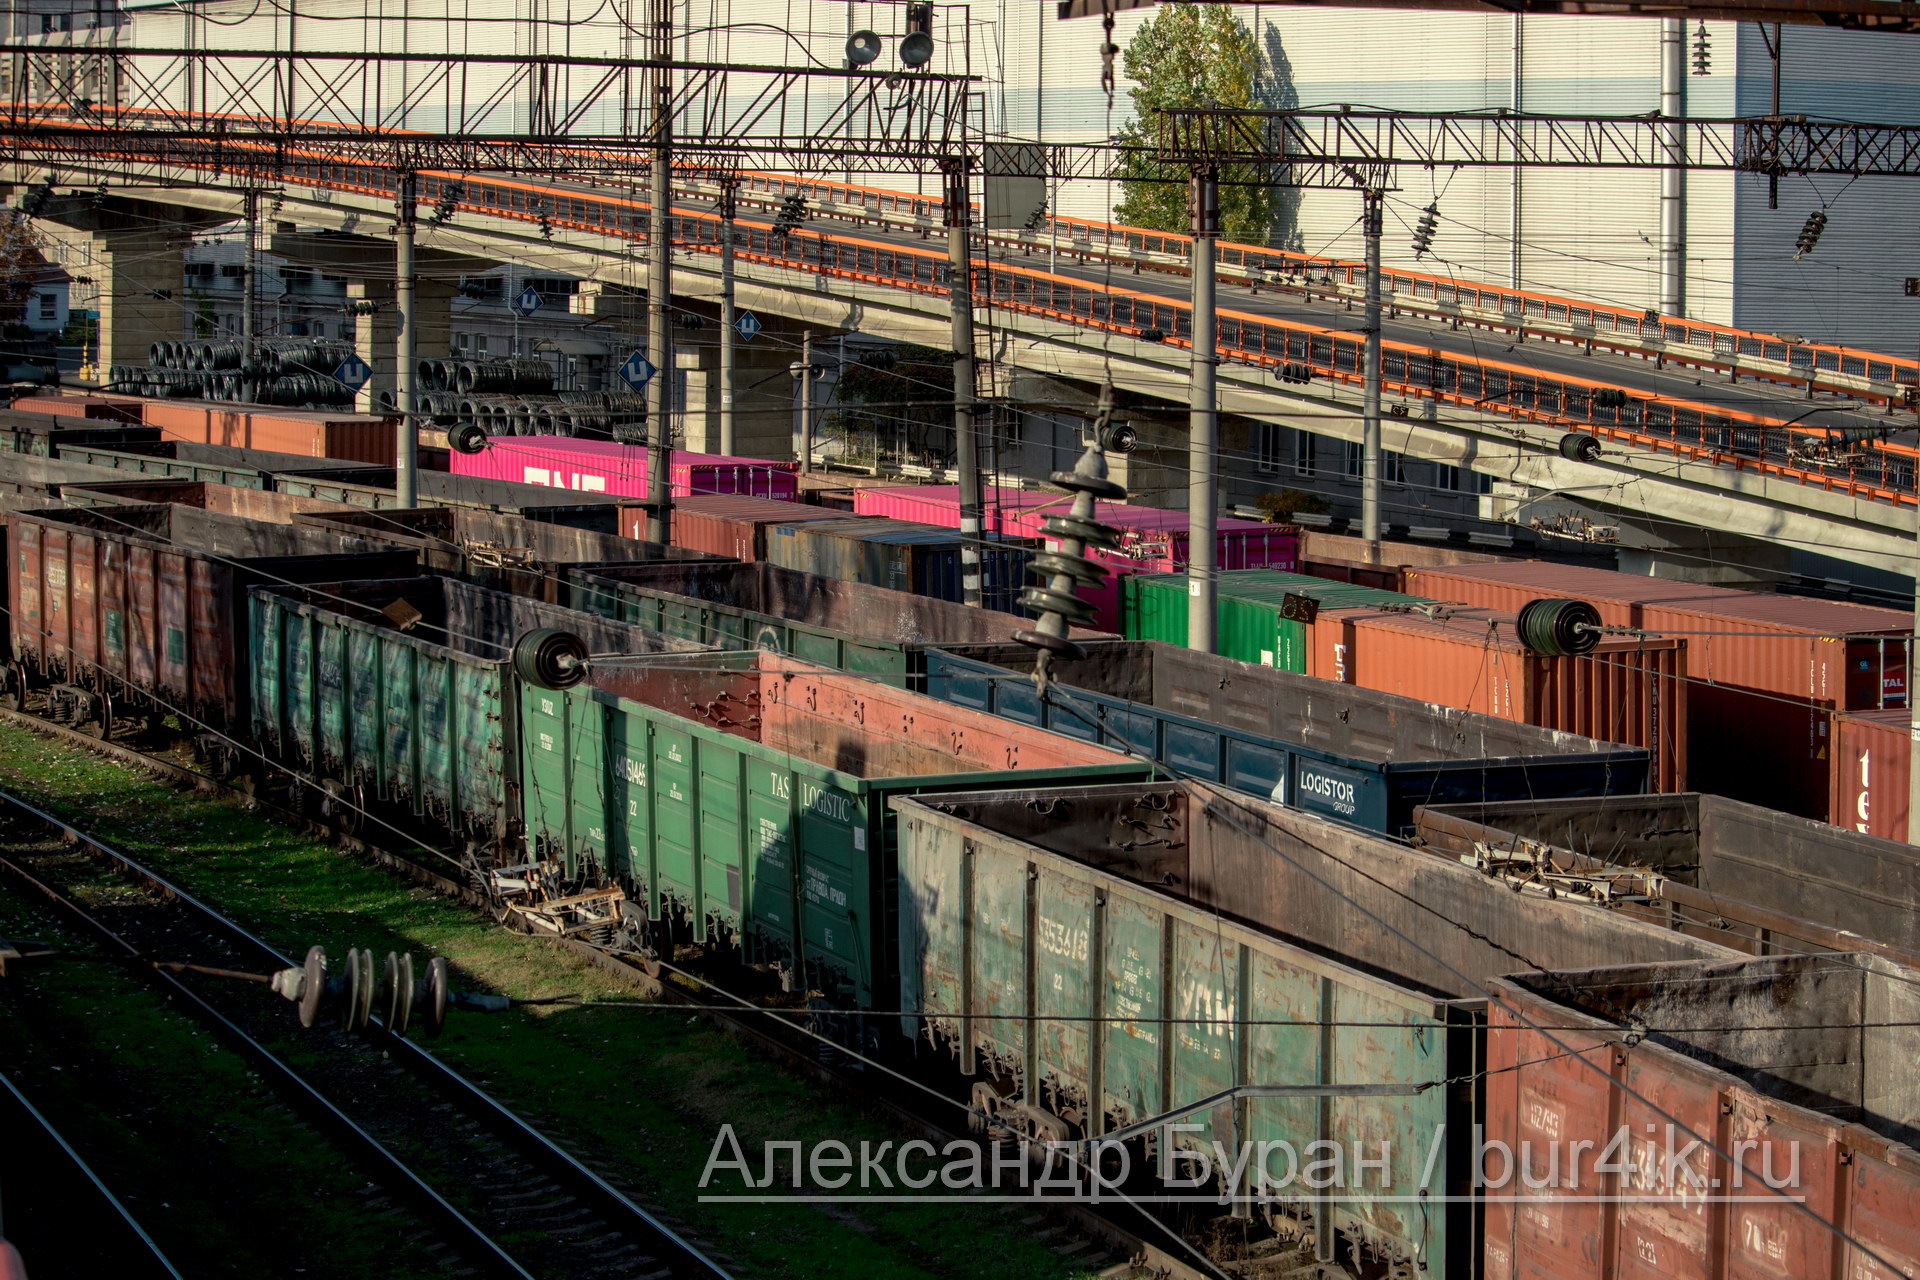 Железнодорожных вагонов в порту у моря - Украина, Одесса, 09,11,2019